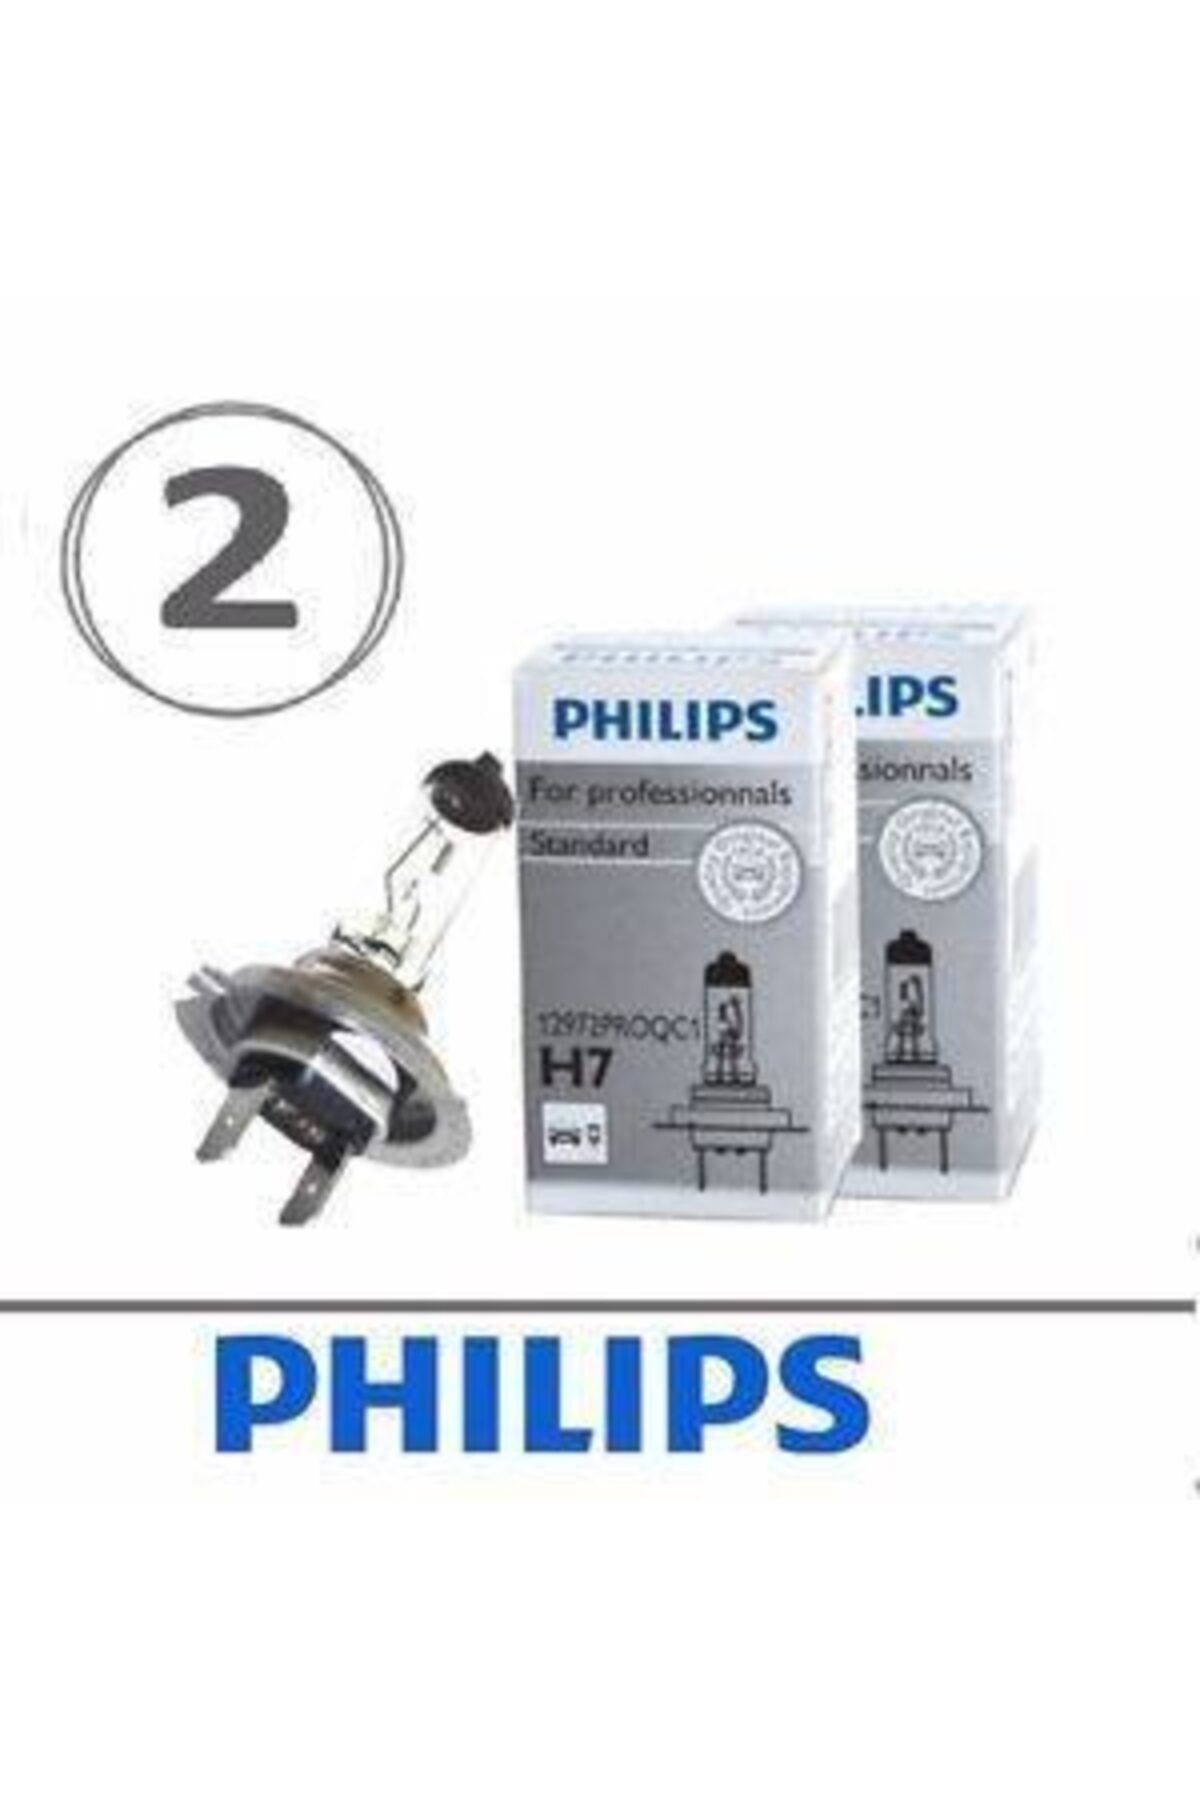 Philips H7 Ampul 12v 55w 12972proqc1 - 2 Adet Fiyatı, Yorumları